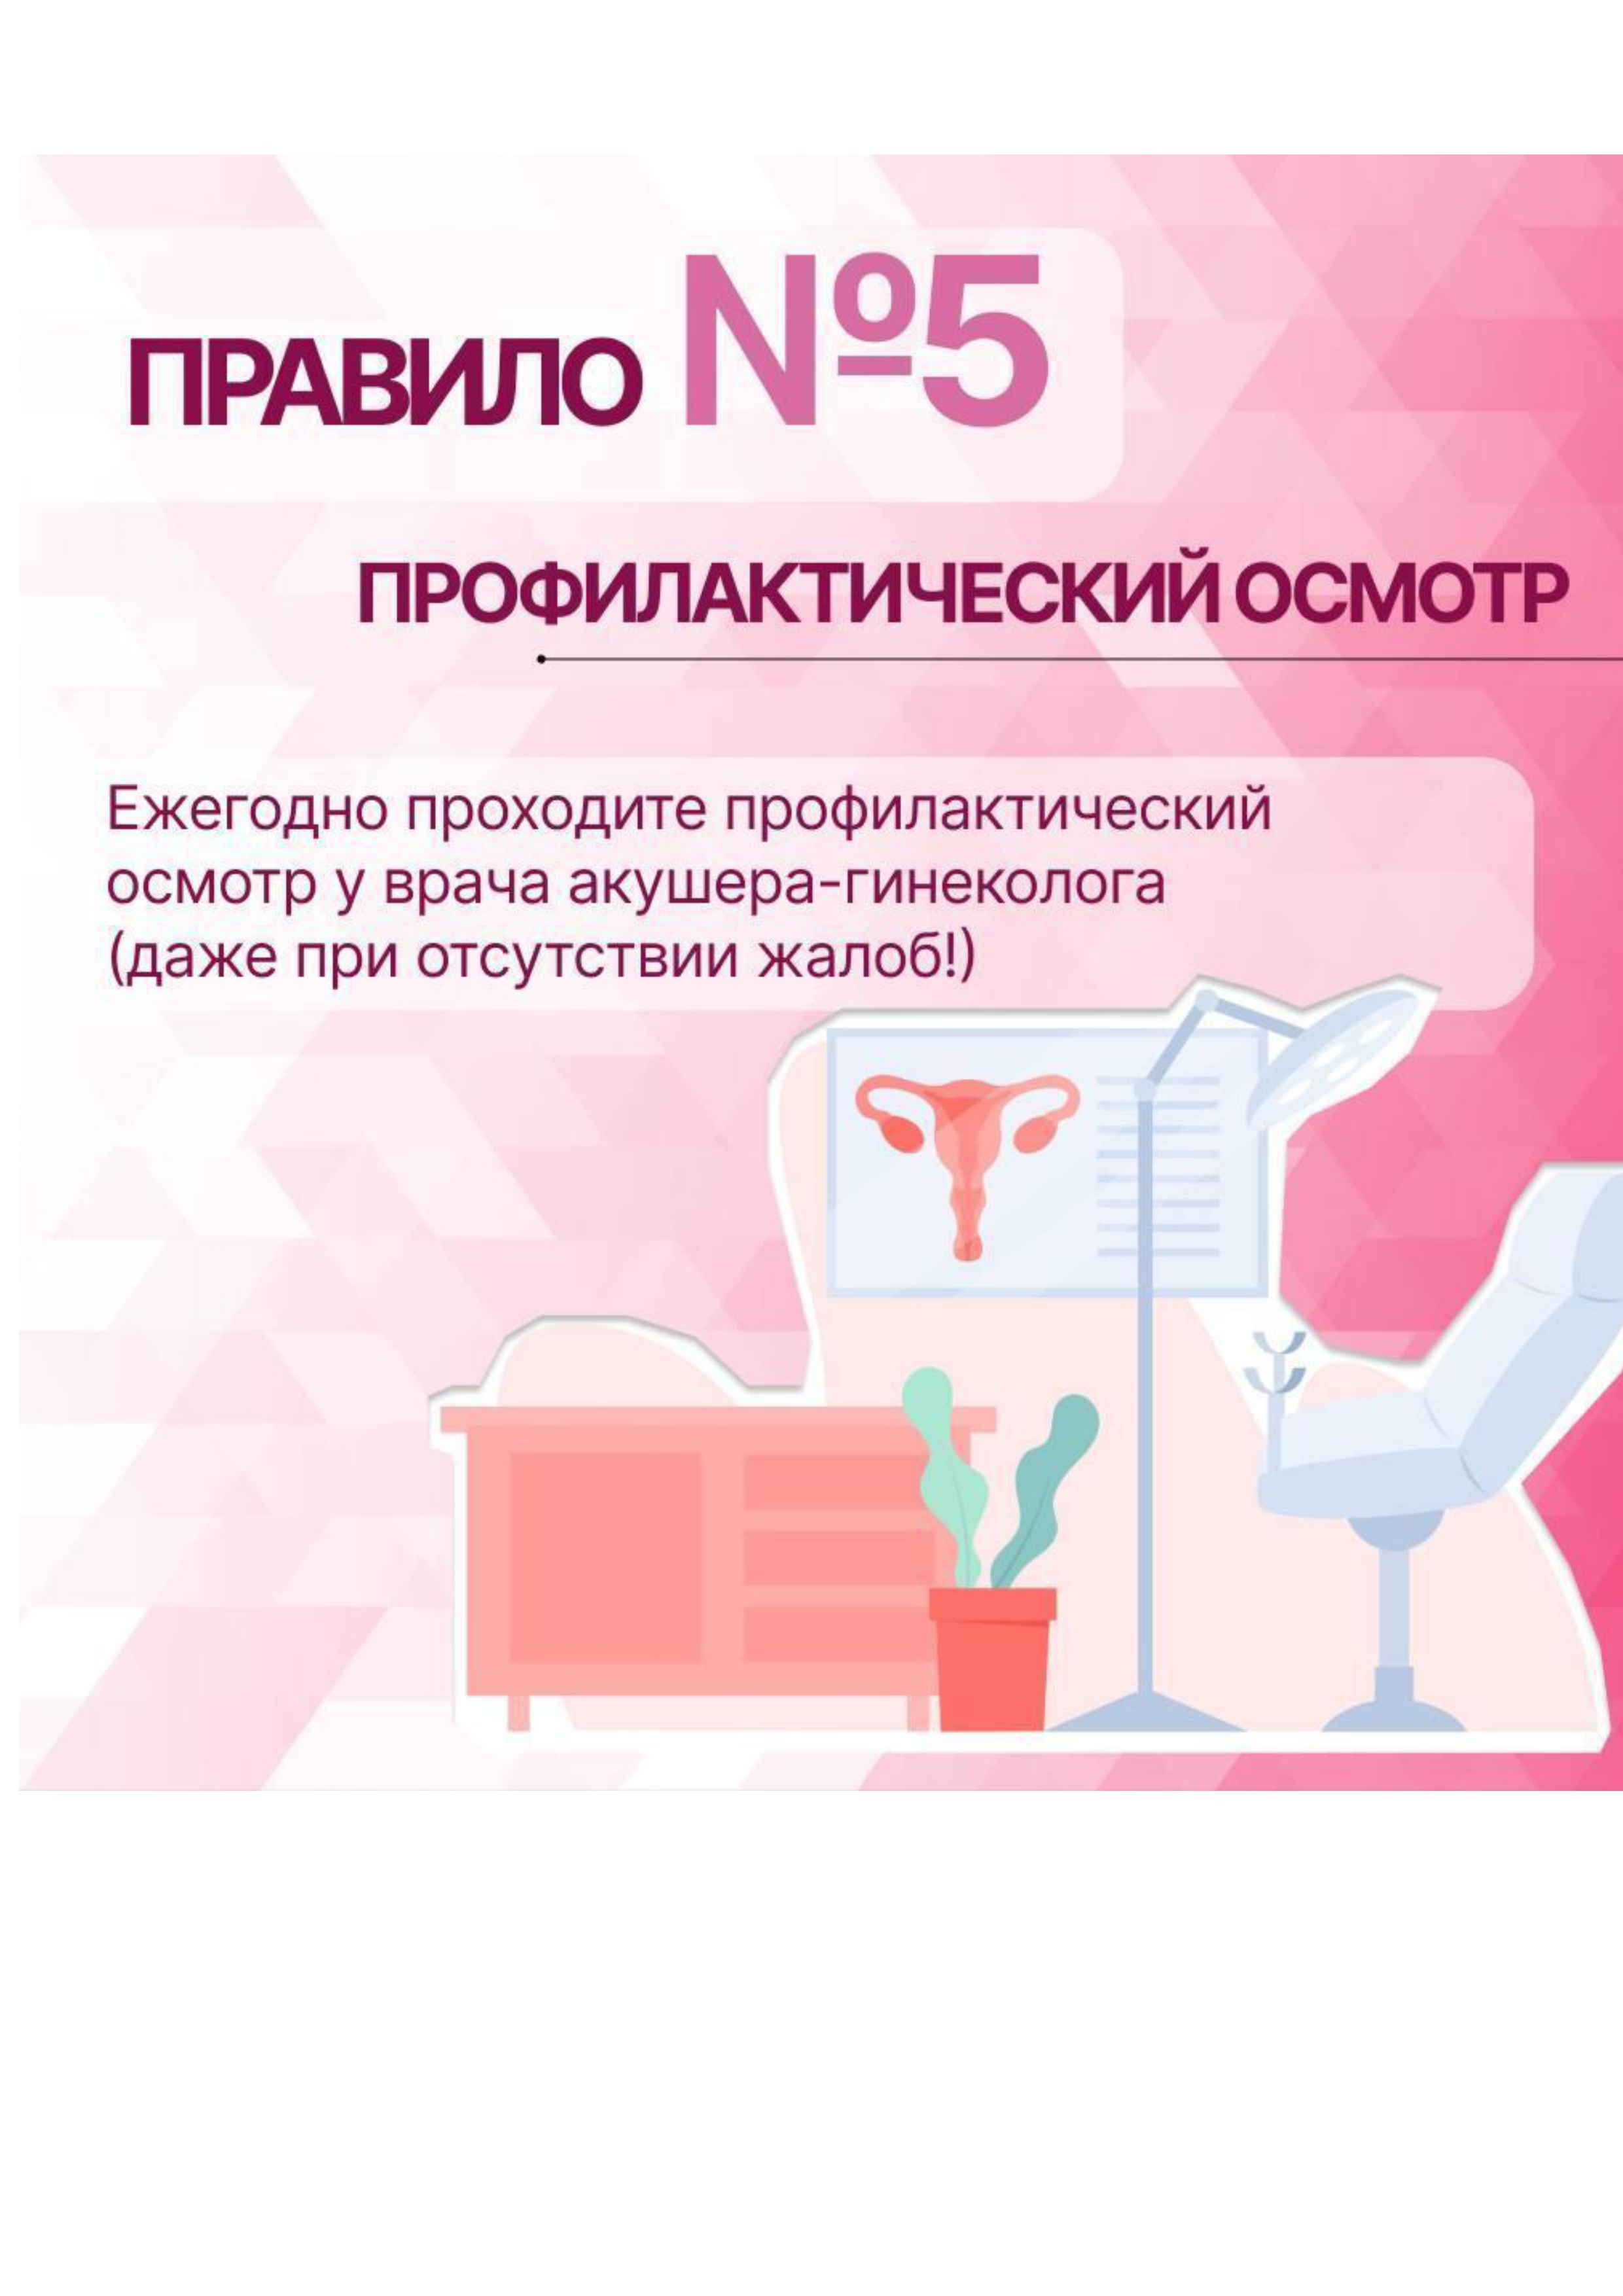 сохранение репродуктивного здоровья page 0008